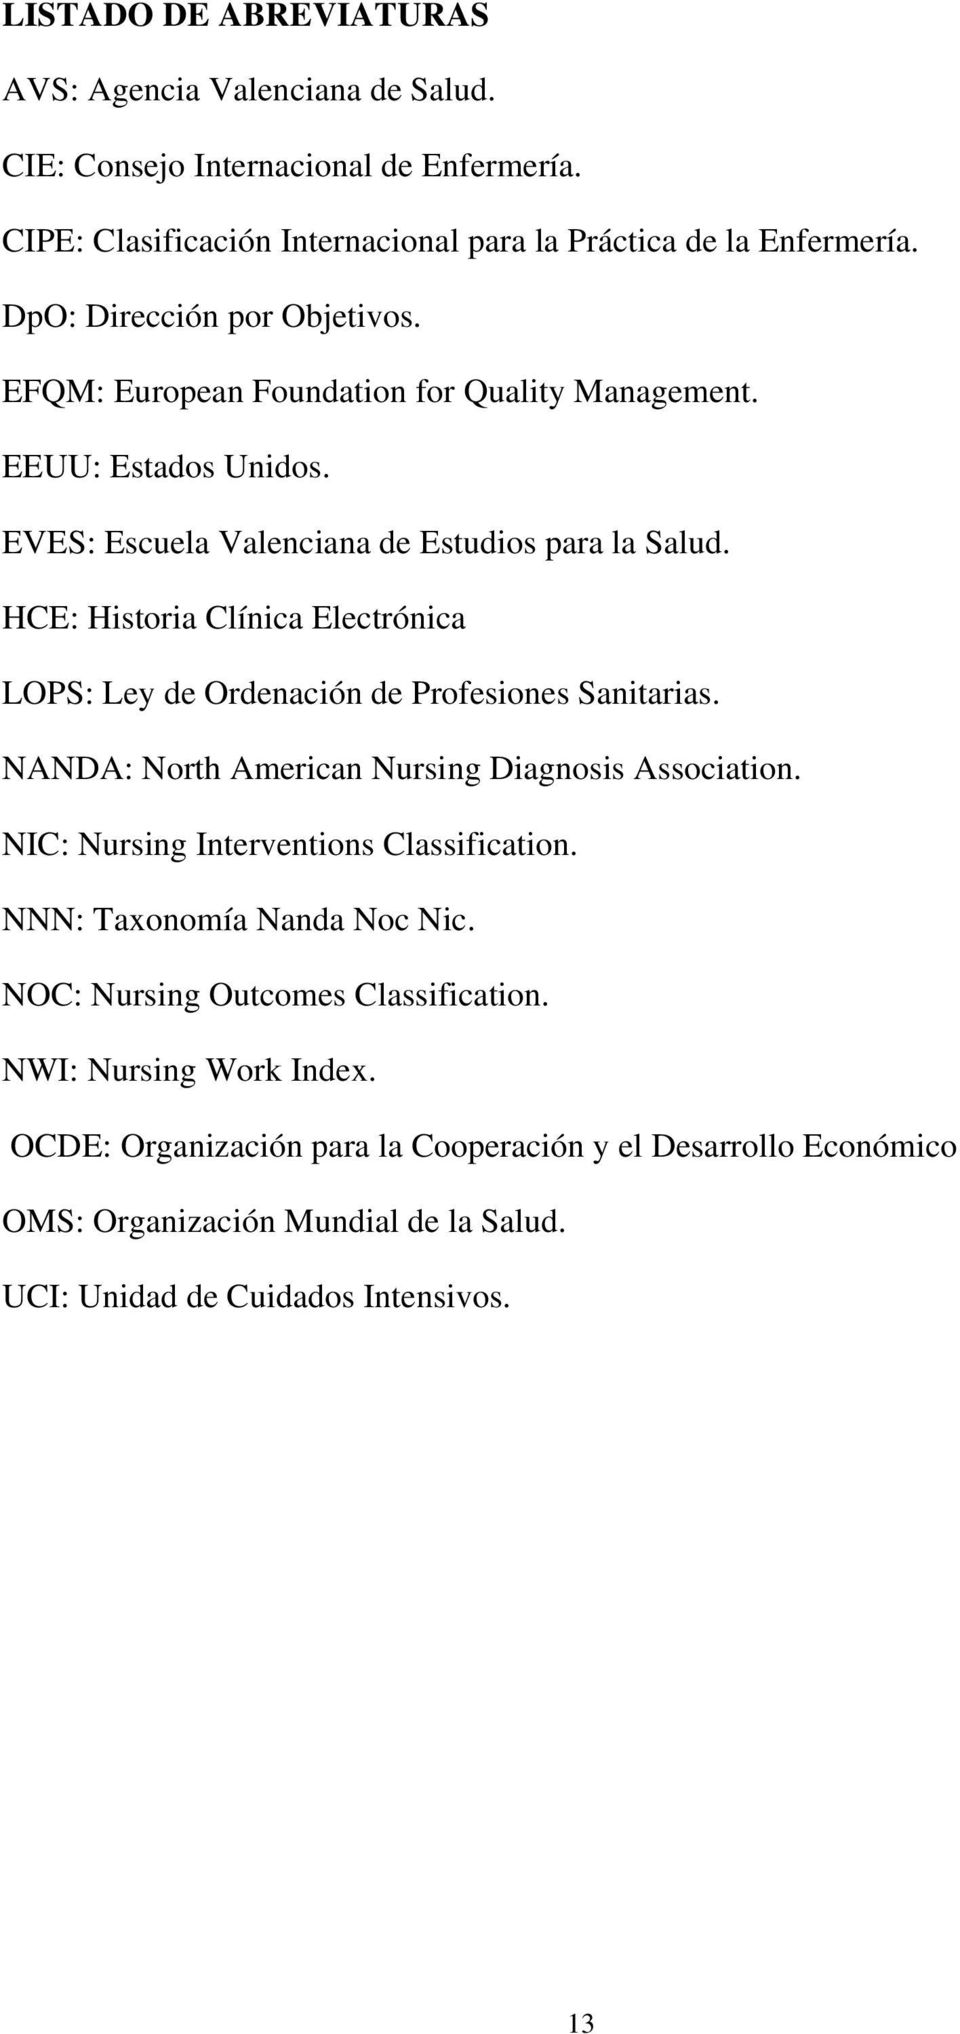 HCE: Historia Clínica Electrónica LOPS: Ley de Ordenación de Profesiones Sanitarias. NANDA: North American Nursing Diagnosis Association. NIC: Nursing Interventions Classification.